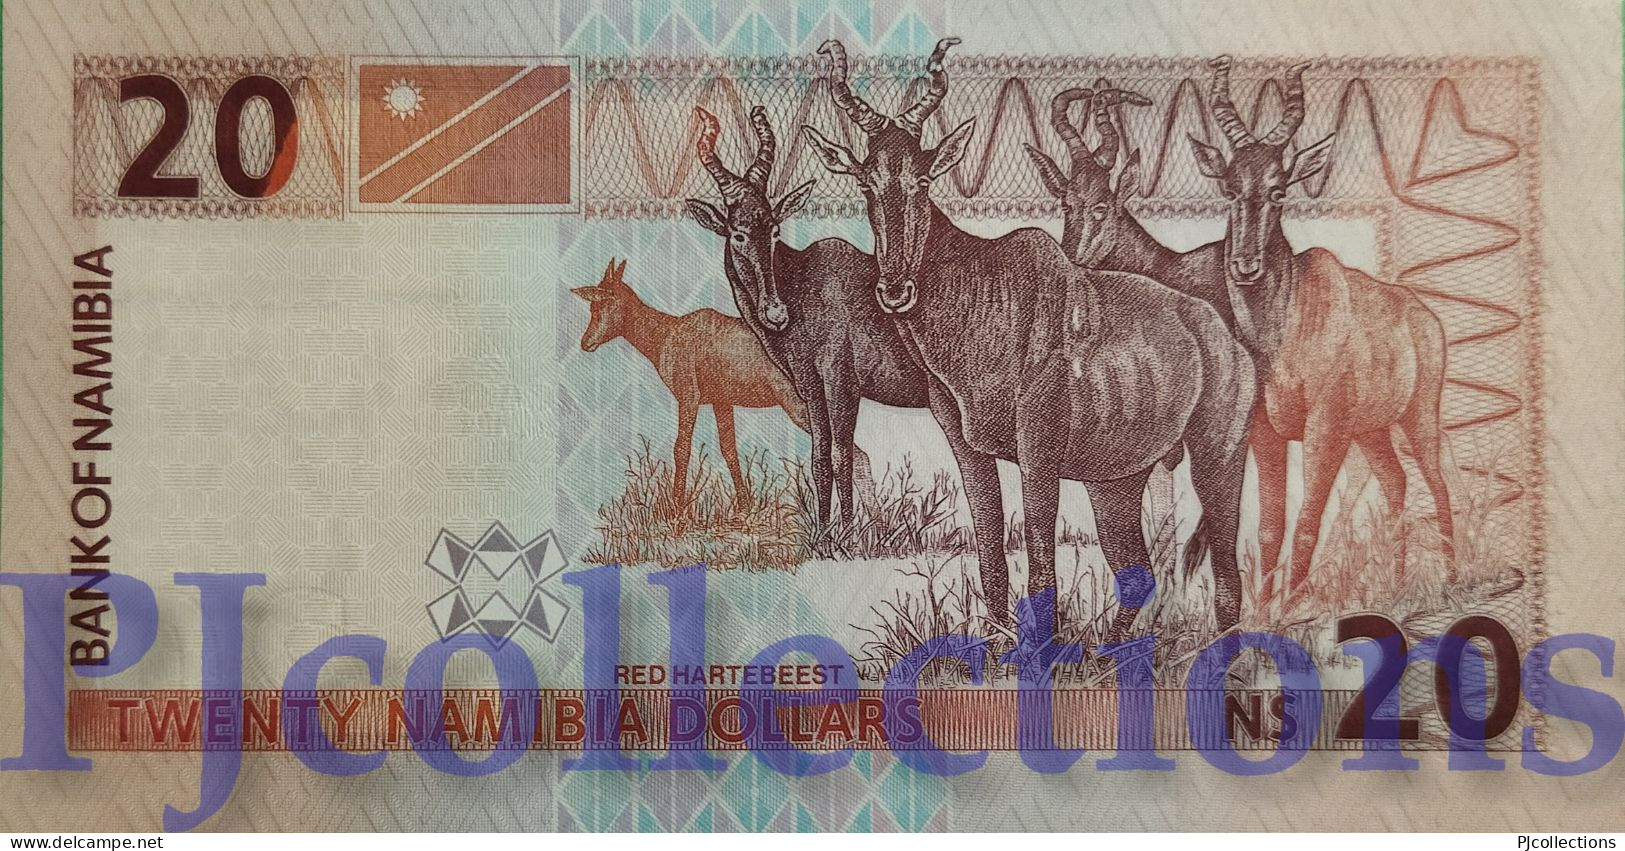 NAMIBIA 20 DOLLARS 2002 PICK 6b UNC - Namibie